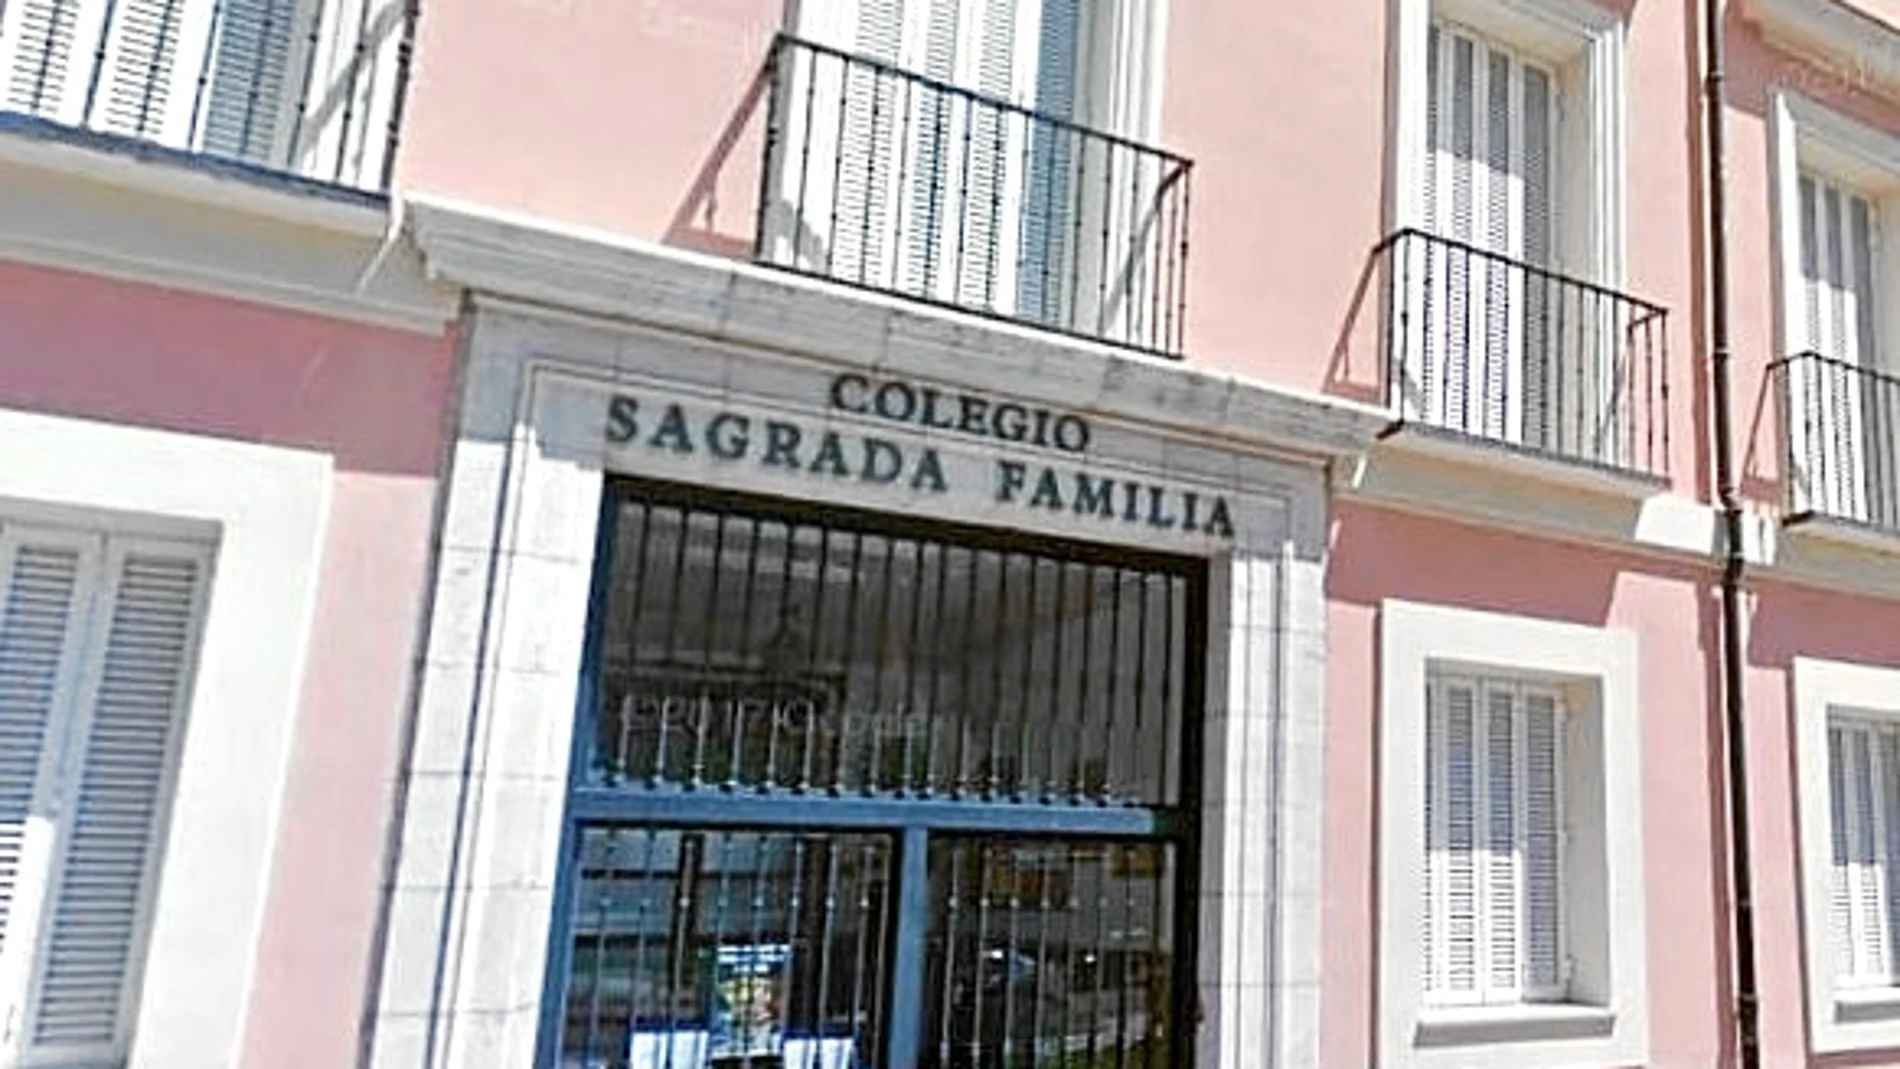 La agresión se produjo en la puerta de un colegio de Aranjuez. Dos de los cinco agresores son menores de edad, por lo que fueron puestos a disposición de la Fiscalía del Menor